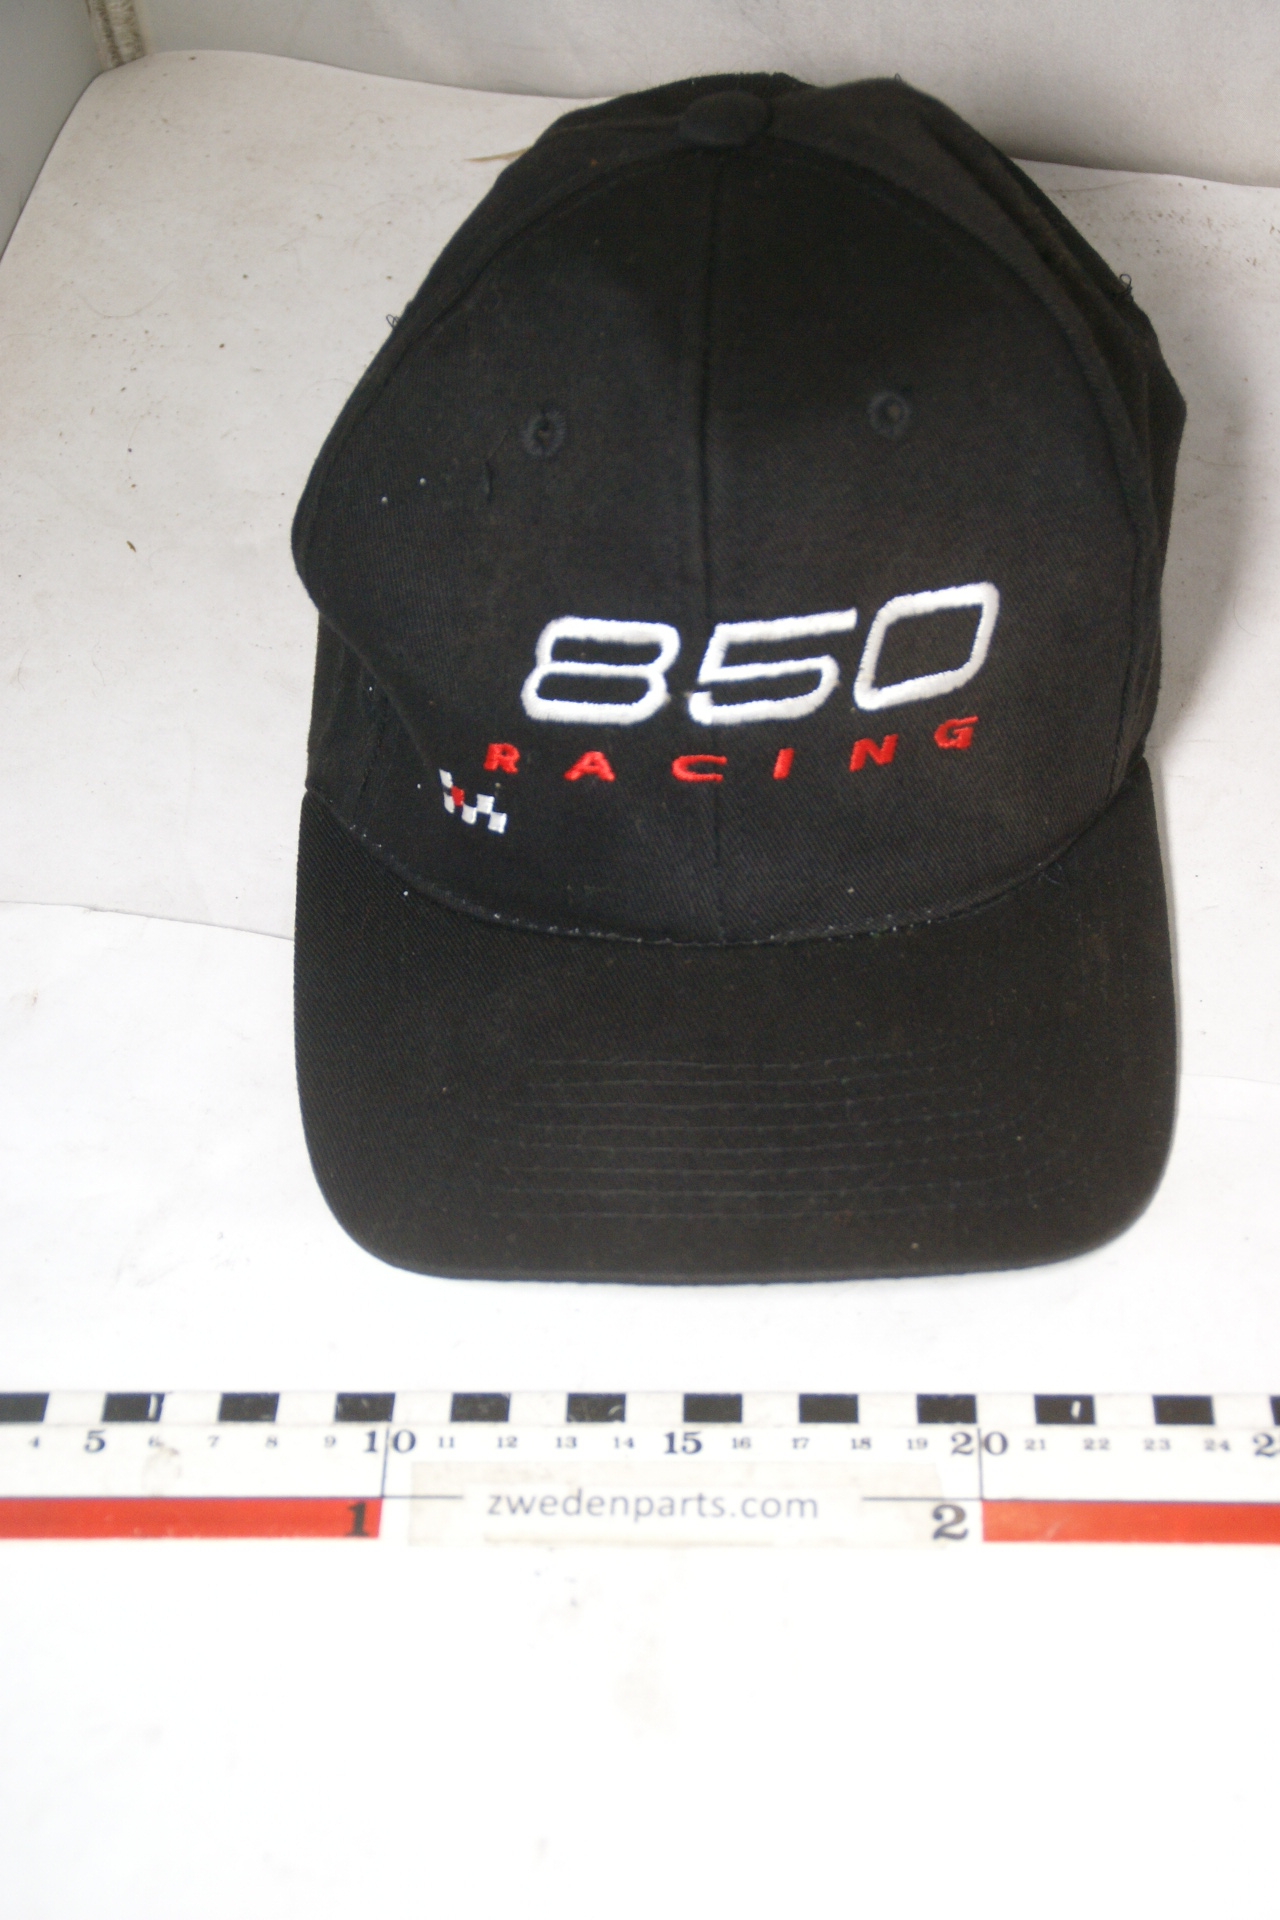 DSC05431 cap Volvo 850 Racing mint